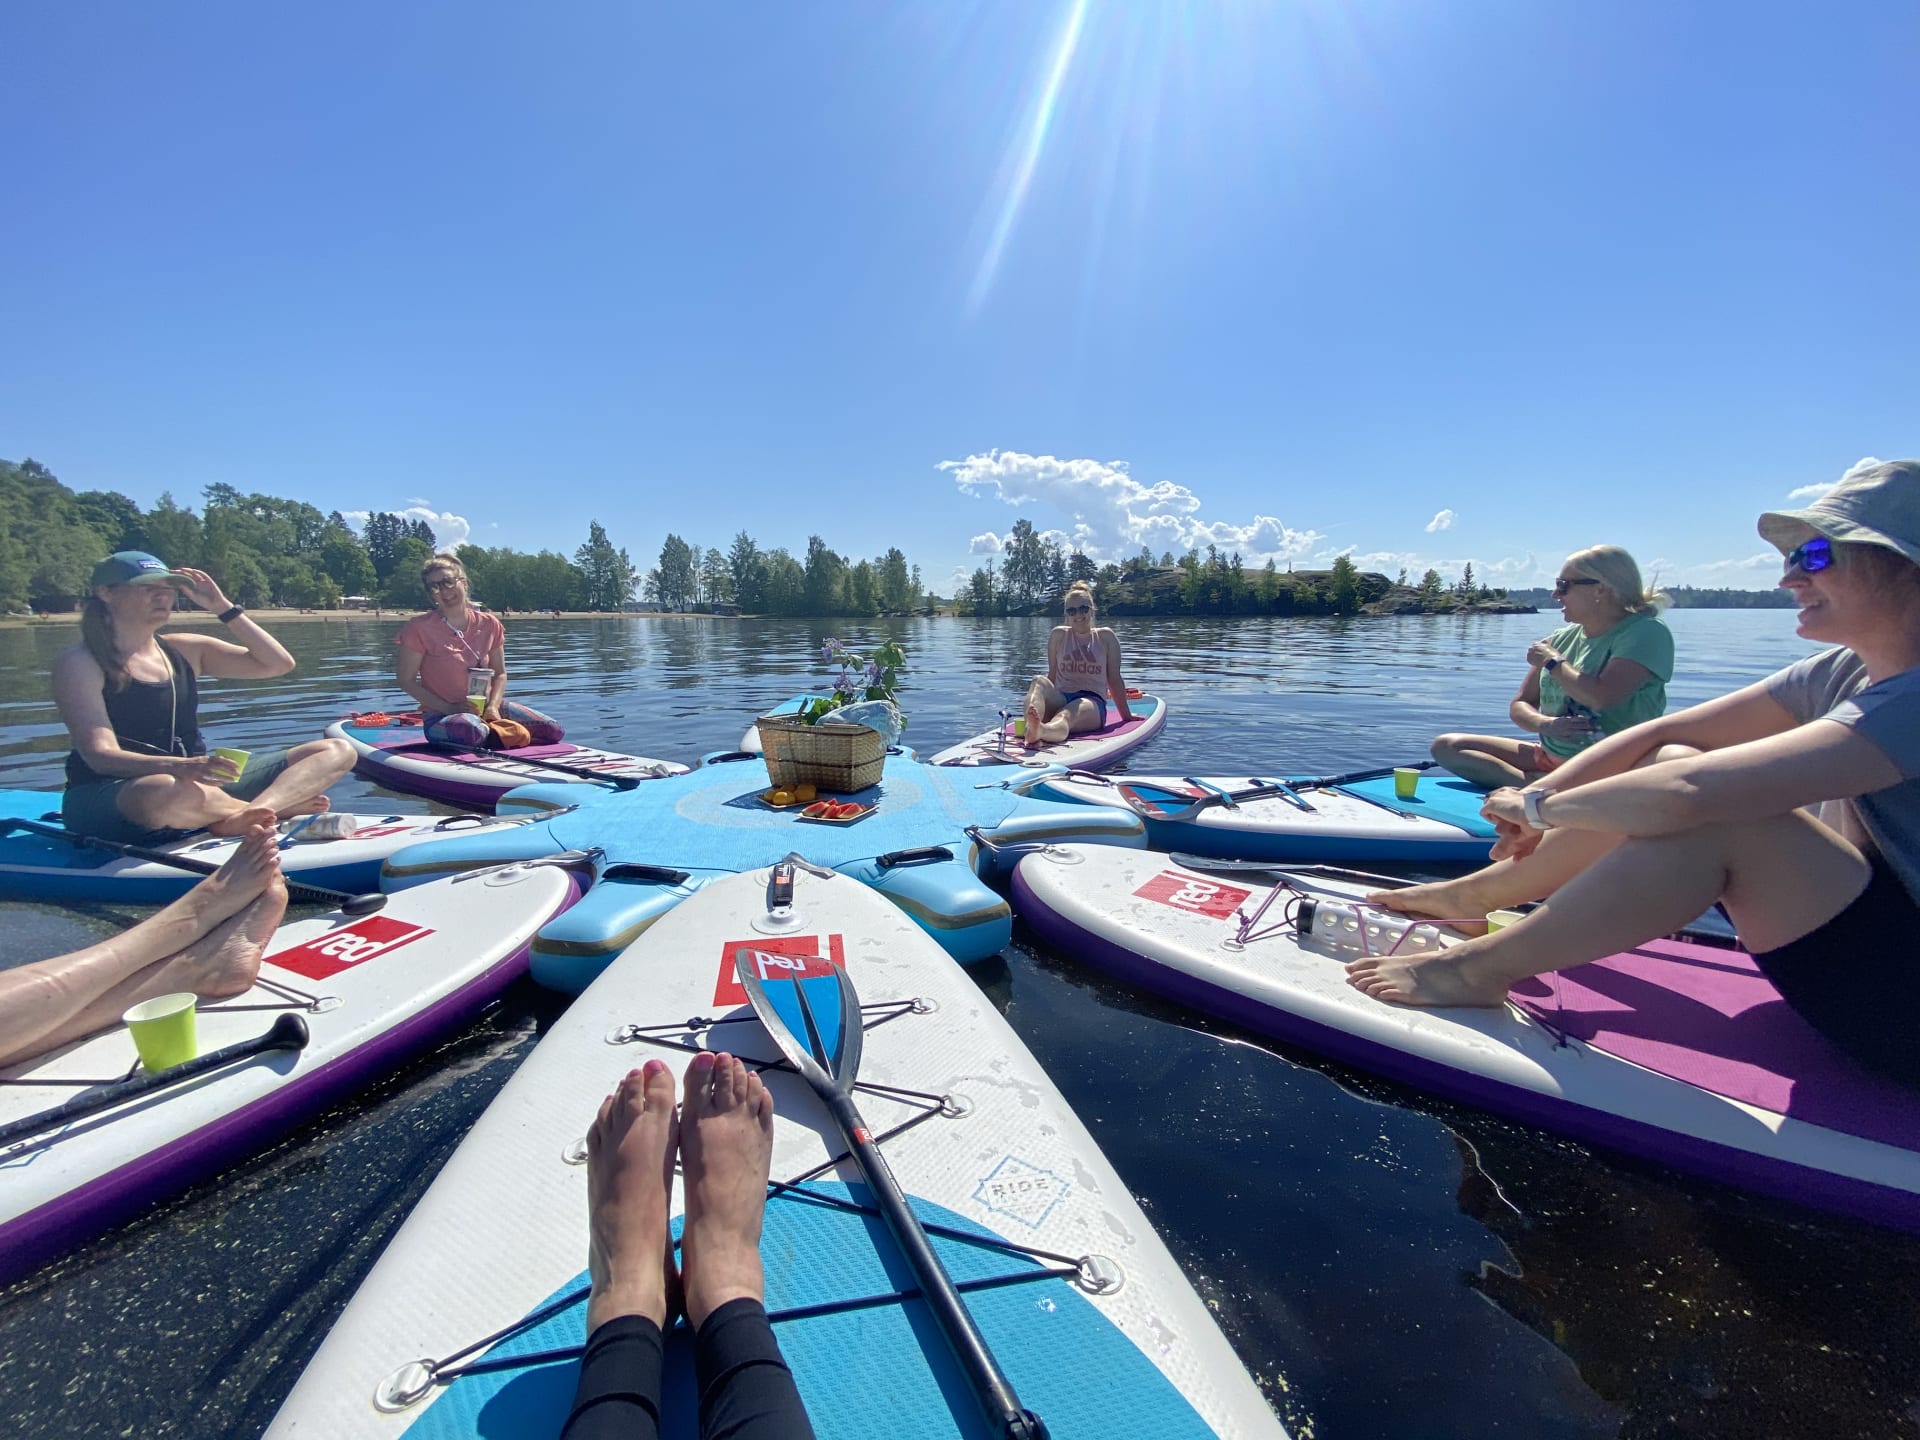 Group of people are sitting on sup boards on lake Pyhäjärvi.